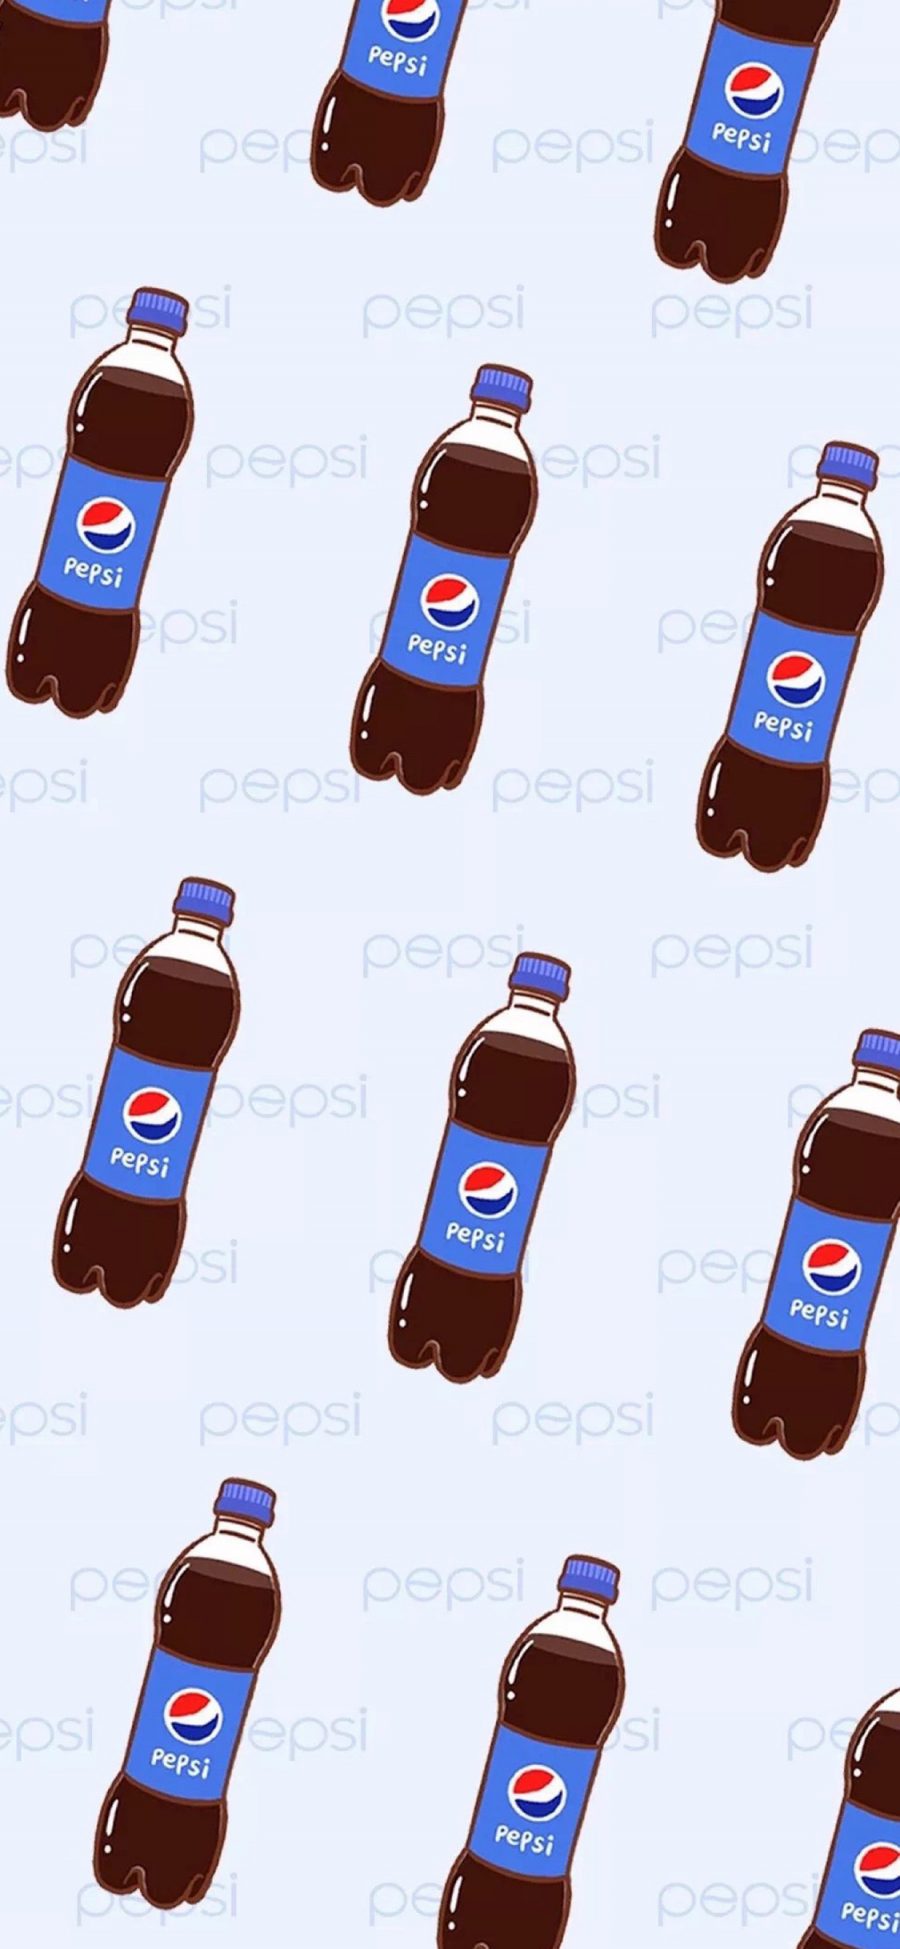 [2436×1125]卡通 百事可乐 Pepsi  平铺 苹果手机动漫壁纸图片